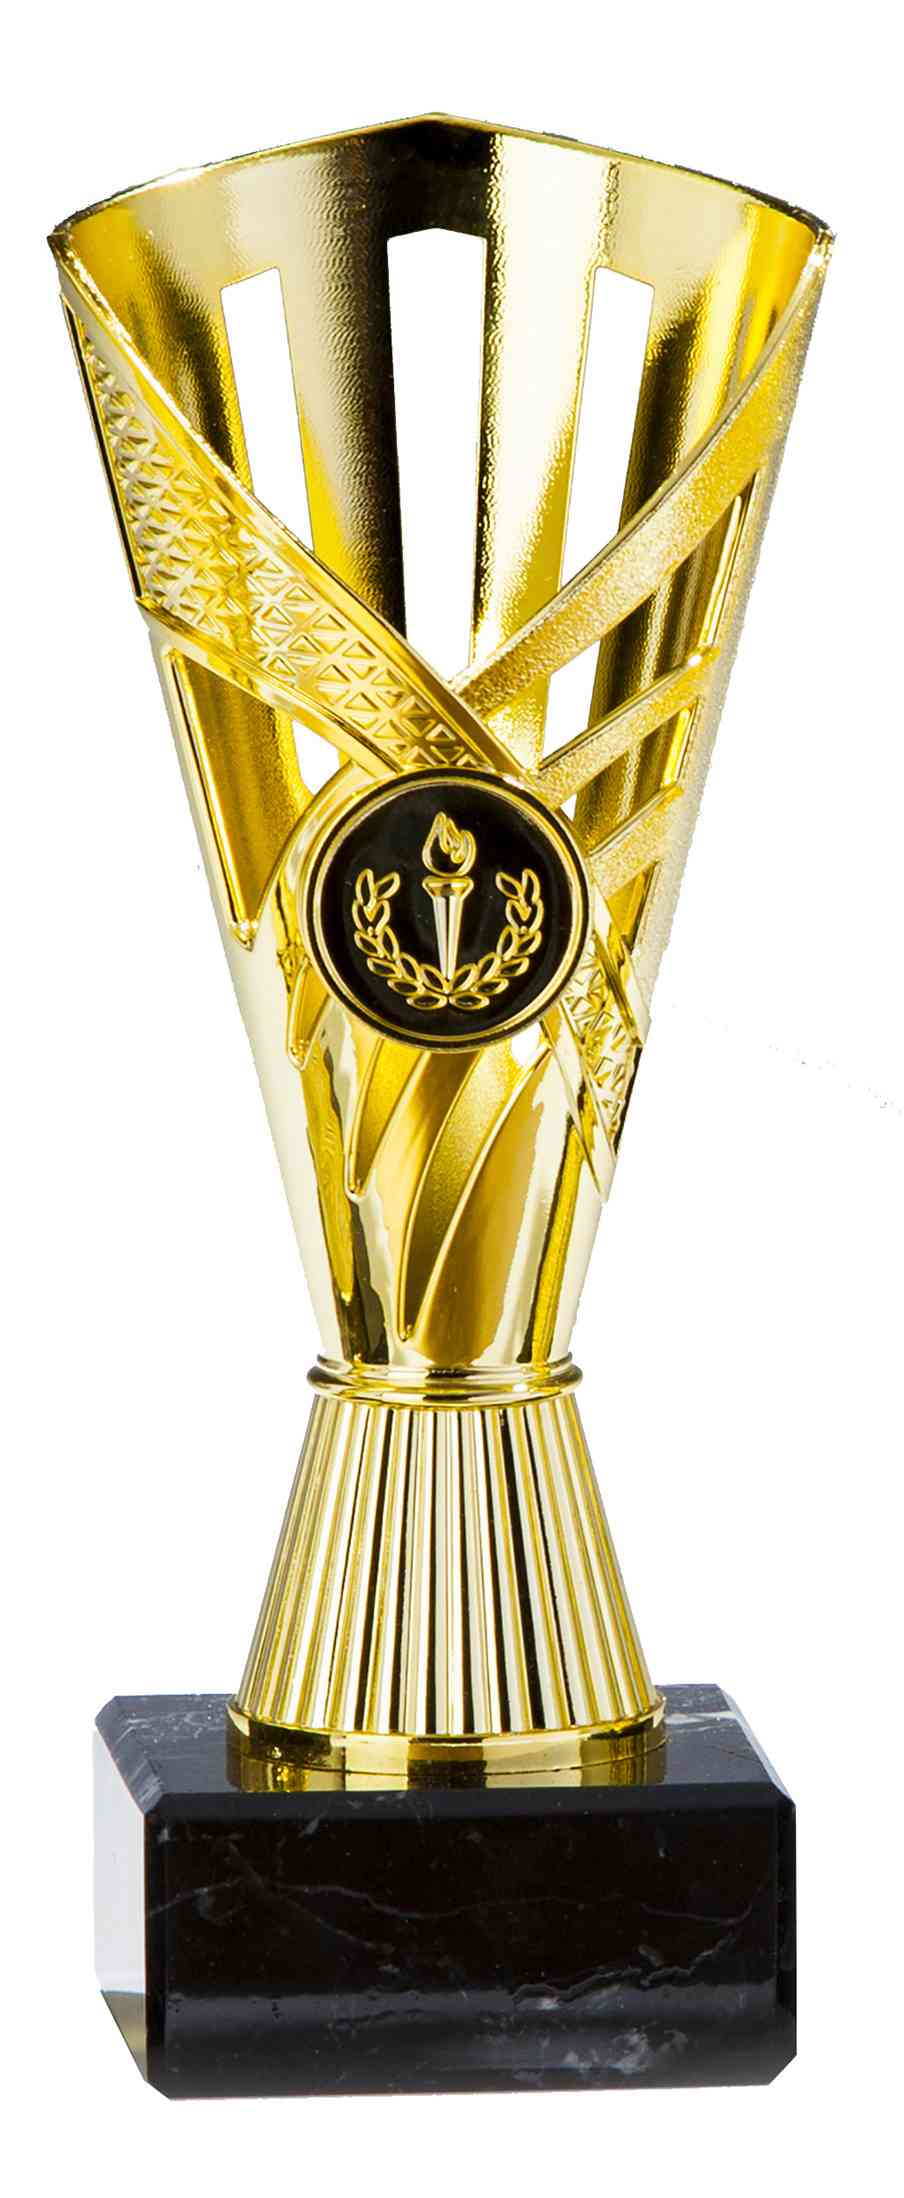 Goldener Pokal aus hochwertigem Material auf einem schwarzen Sockel.
POMEKI Pokale Dormagen 3-er Pokalserie 160 mm - 190 mm PK759150-3-E25.